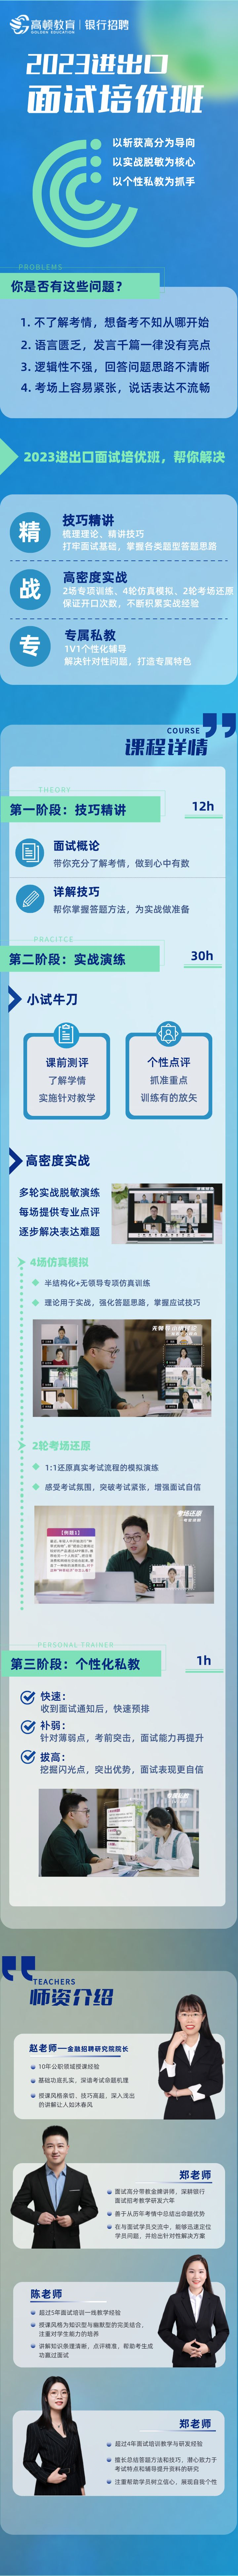 https://simg01.gaodunwangxiao.com/uploadfiles/product-center/202211/09/e1f14_20221109183816.png